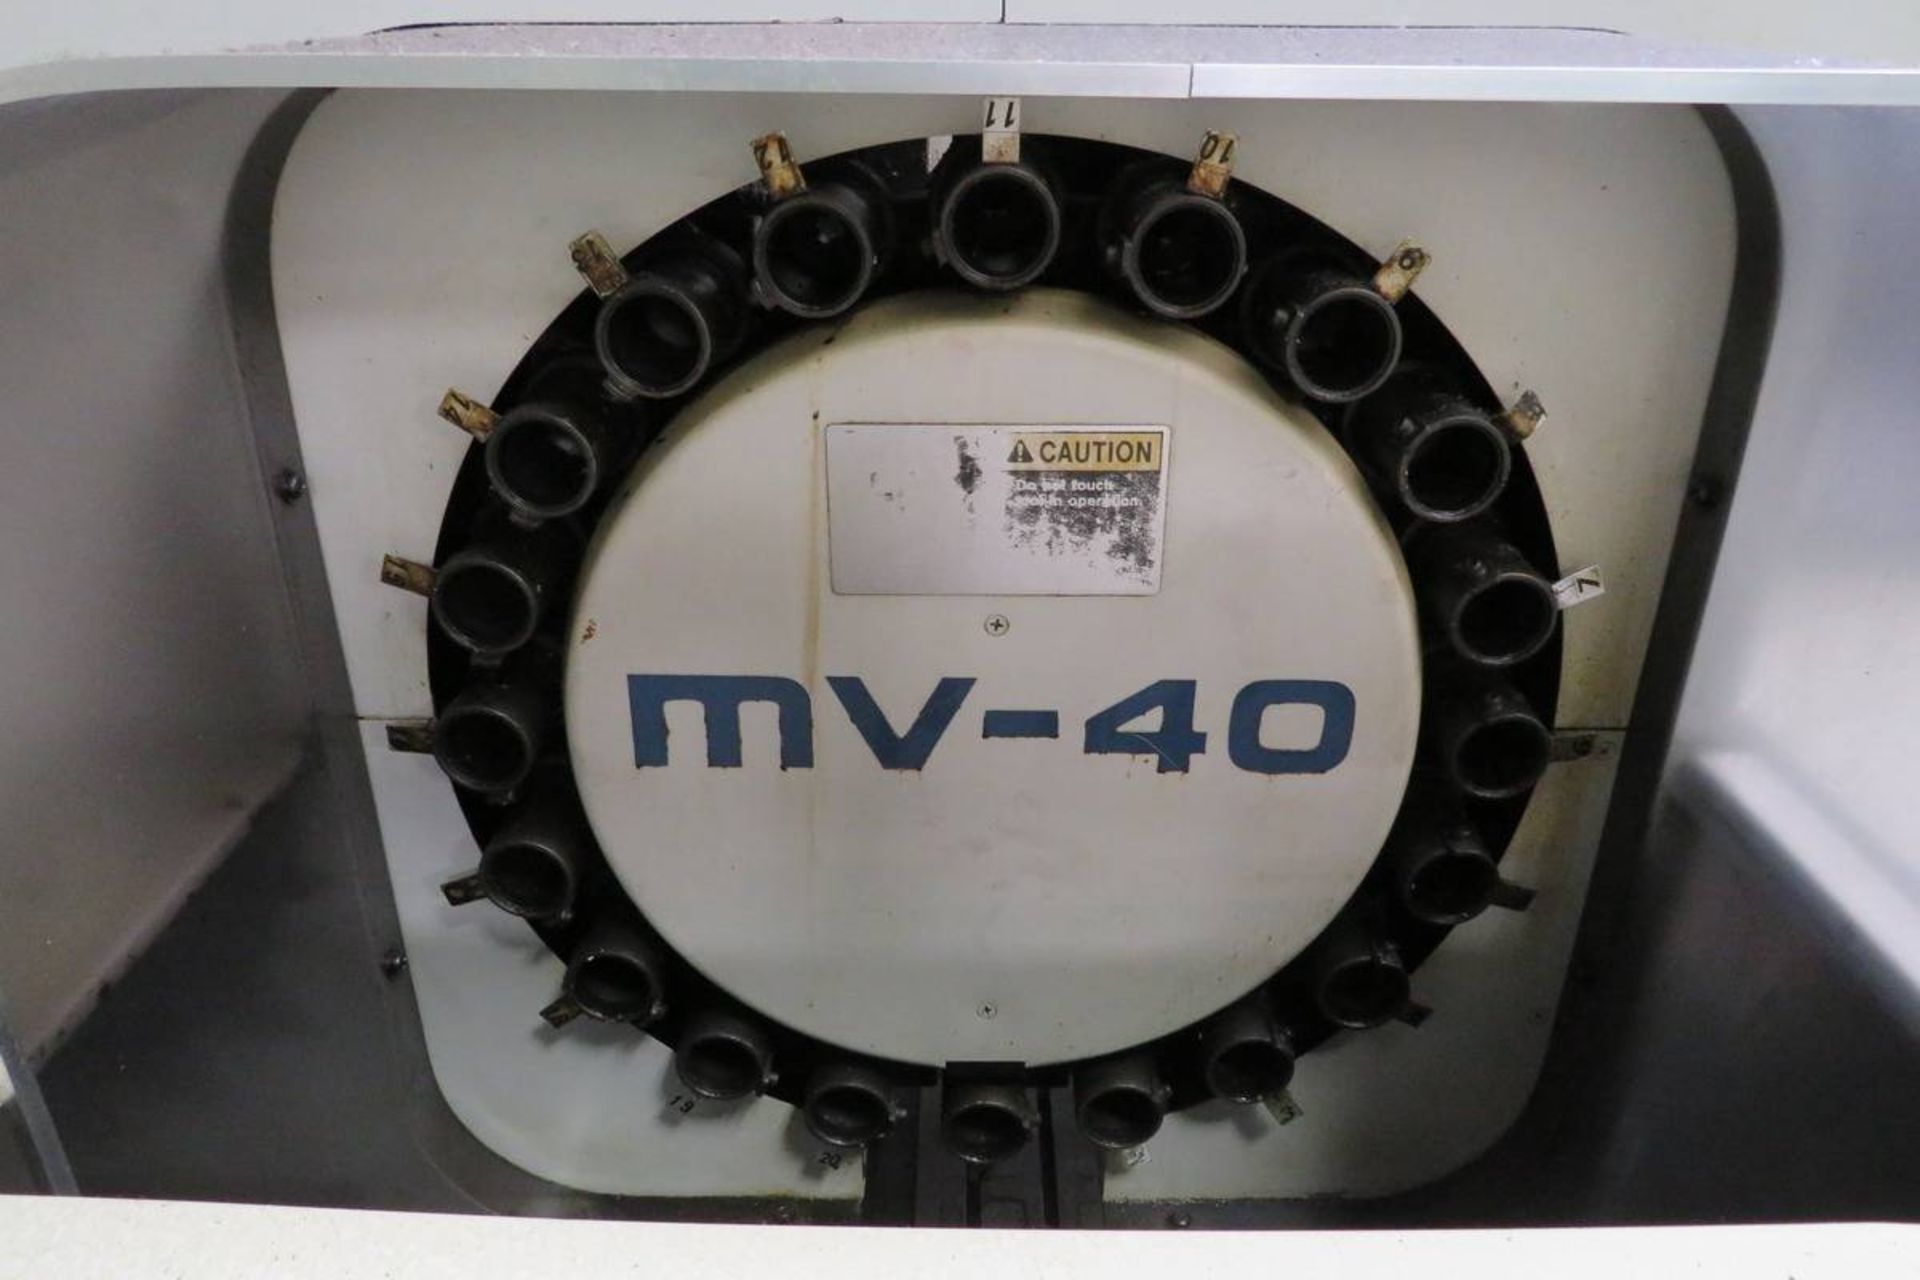 Mori Seiki MV-40B CNC Vertical Machining Center - Image 9 of 11